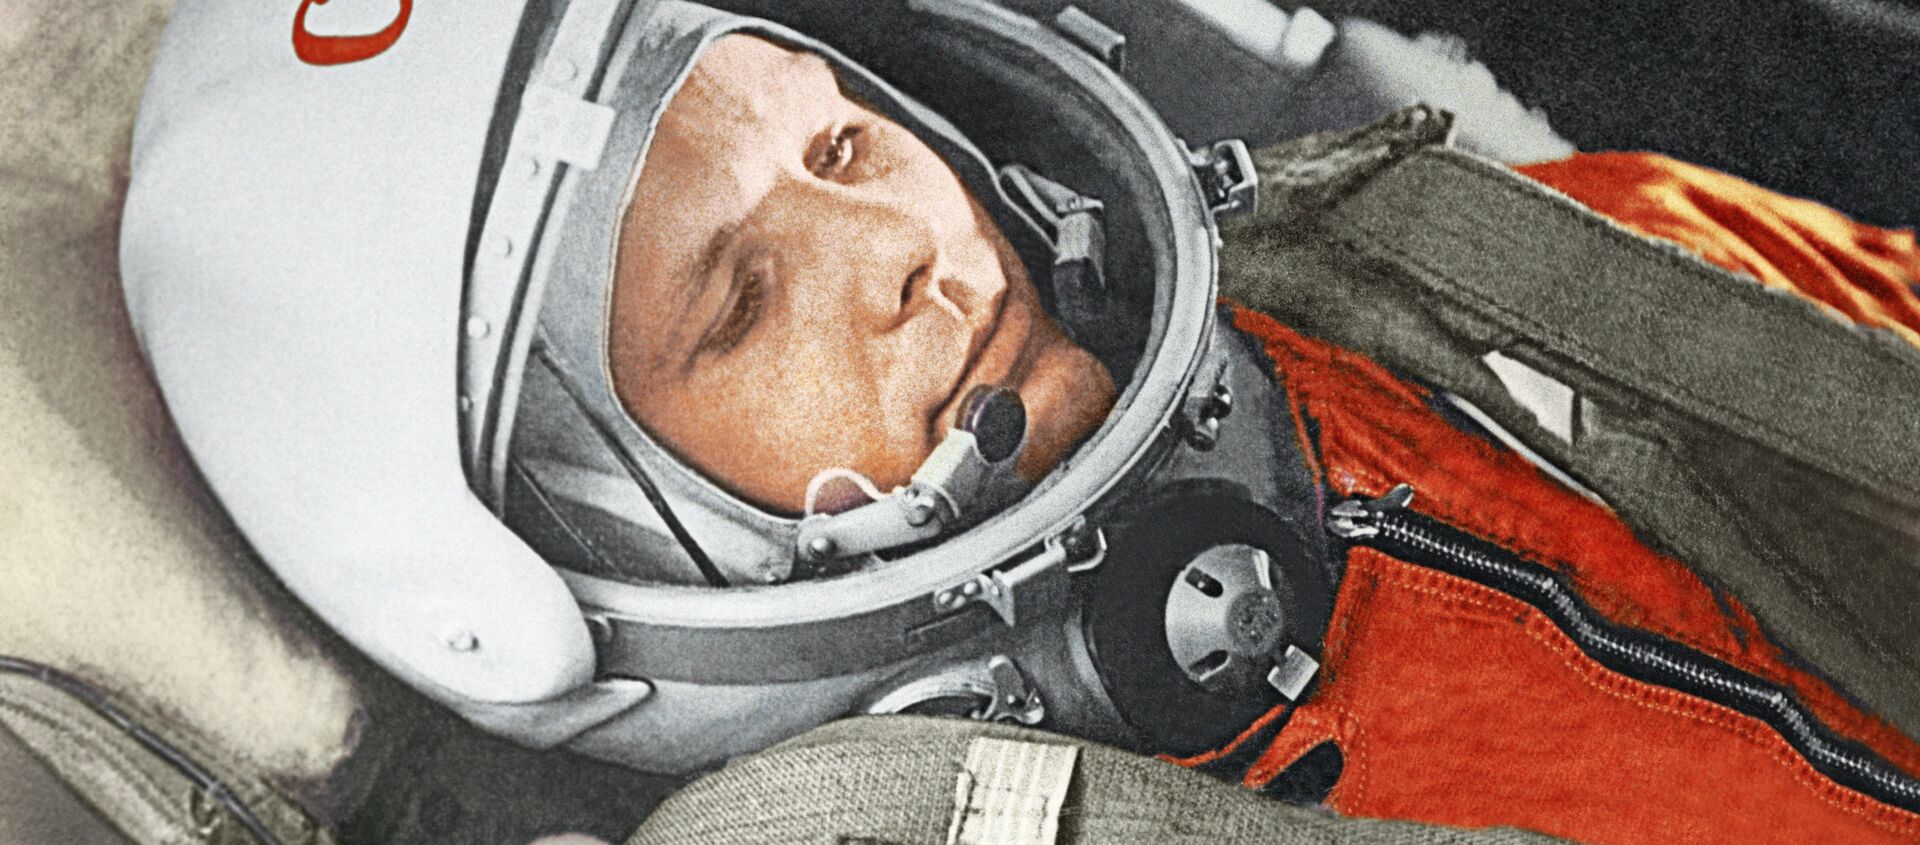 Юрий Гагарин в кабине космического корабля “Восток” во время первого в мире орбитального космического полета 12 апреля 1961 года. - Sputnik Молдова, 1920, 11.04.2021